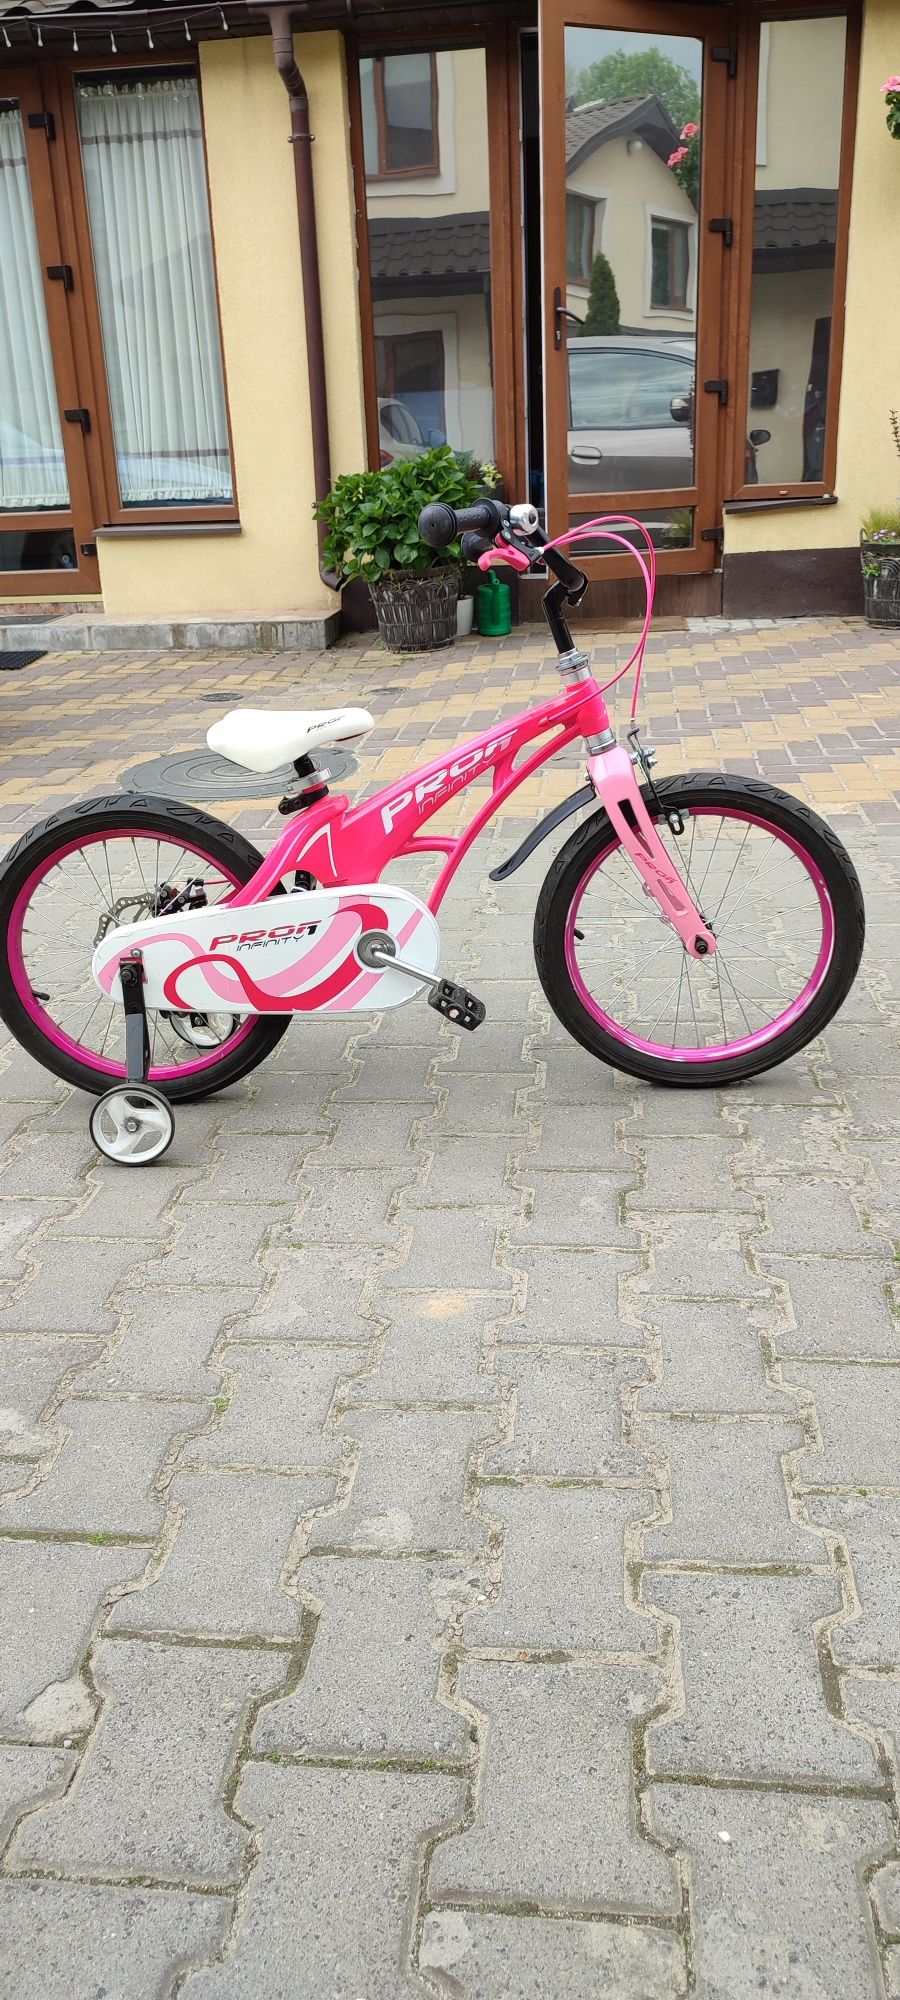 Велосипед для дівчинки 4-7 років